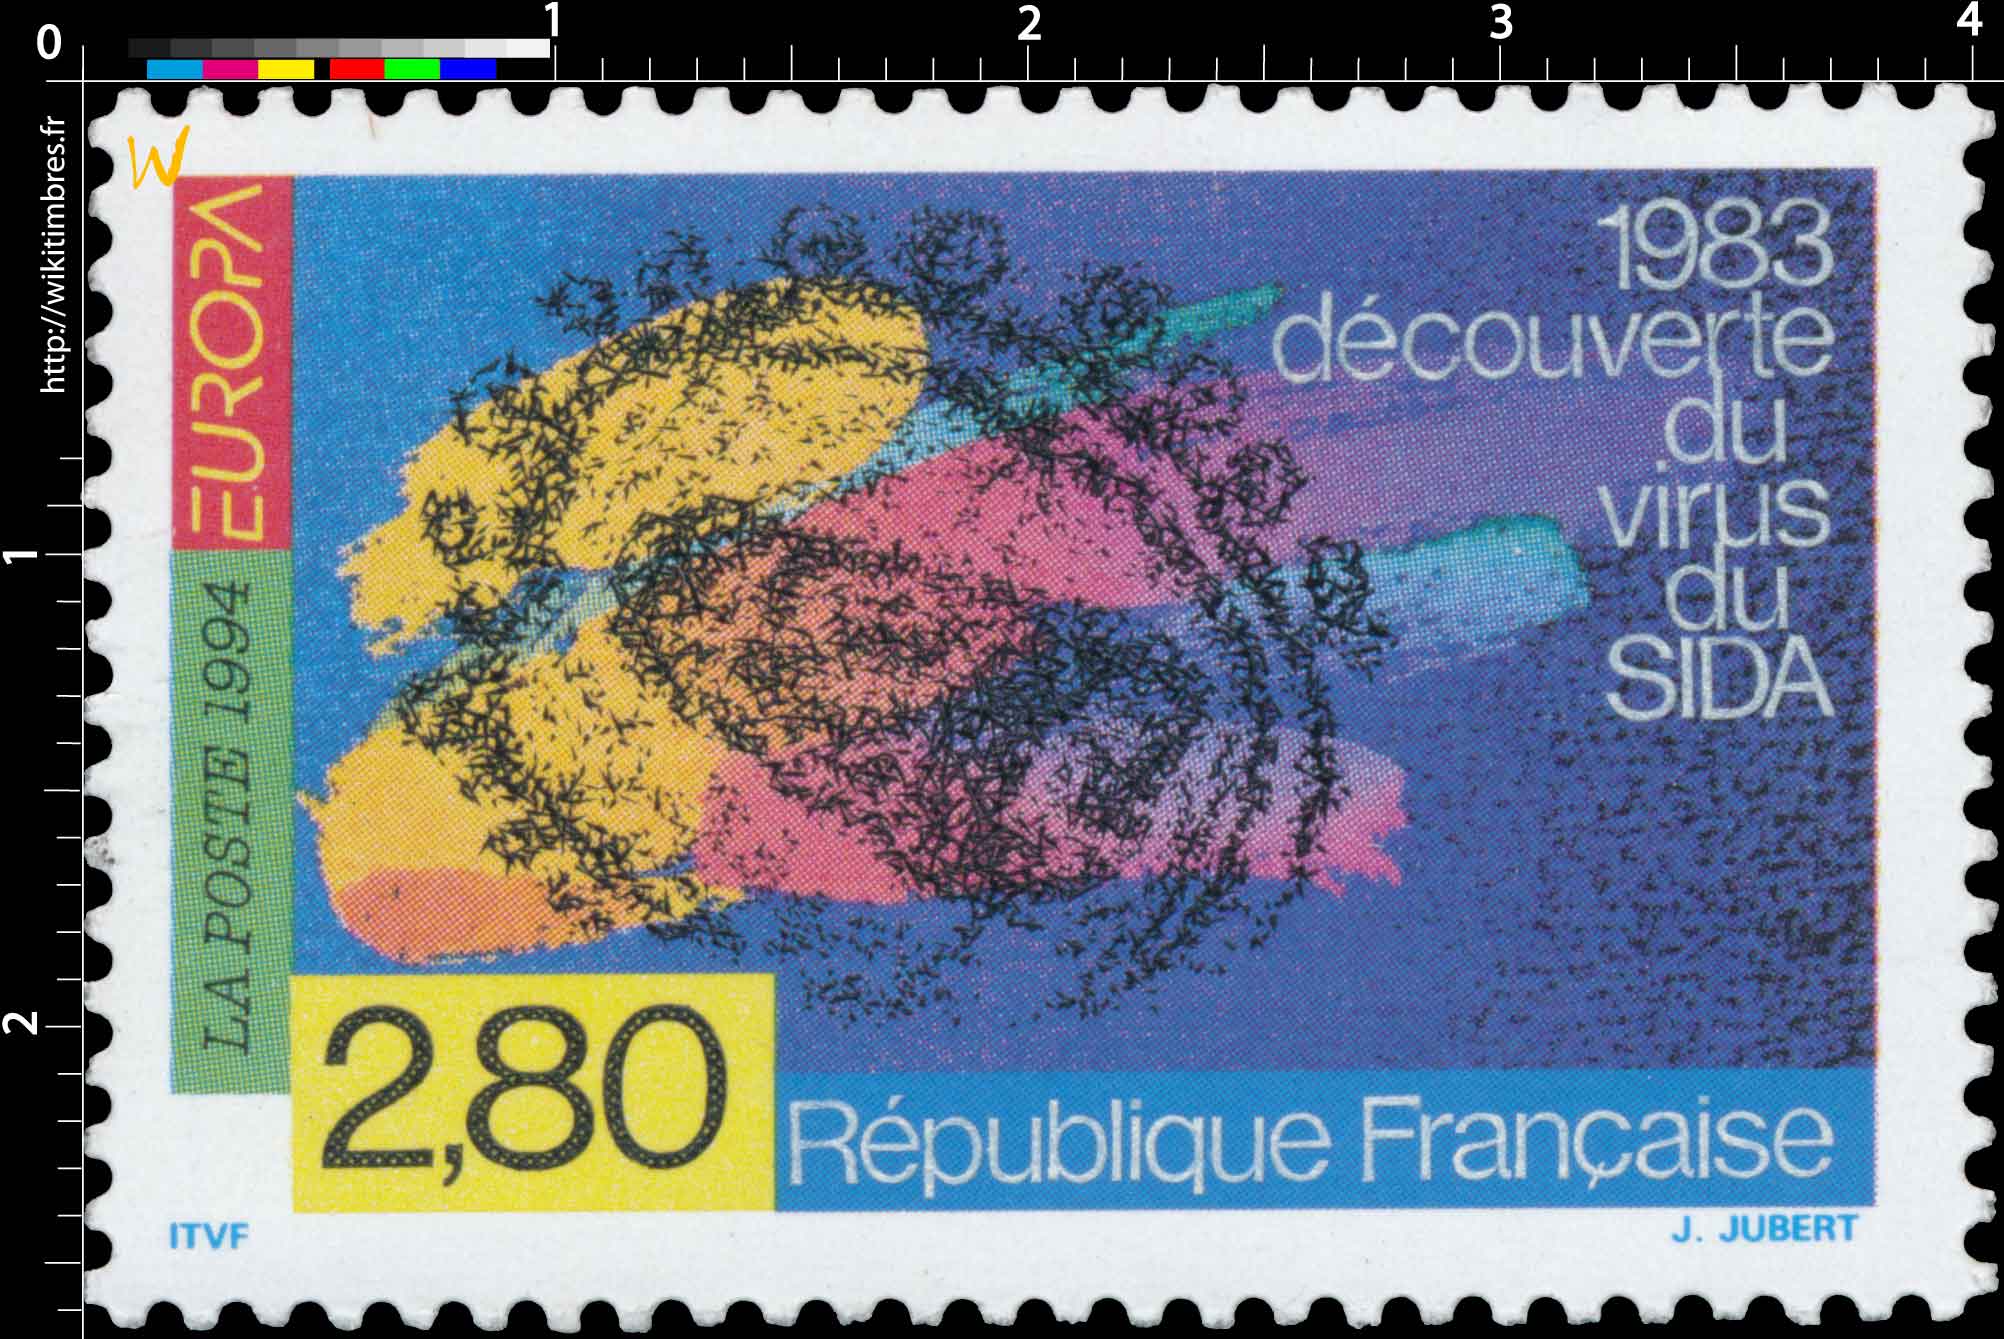 1994 EUROPA 1983 Découverte du virus du SIDA